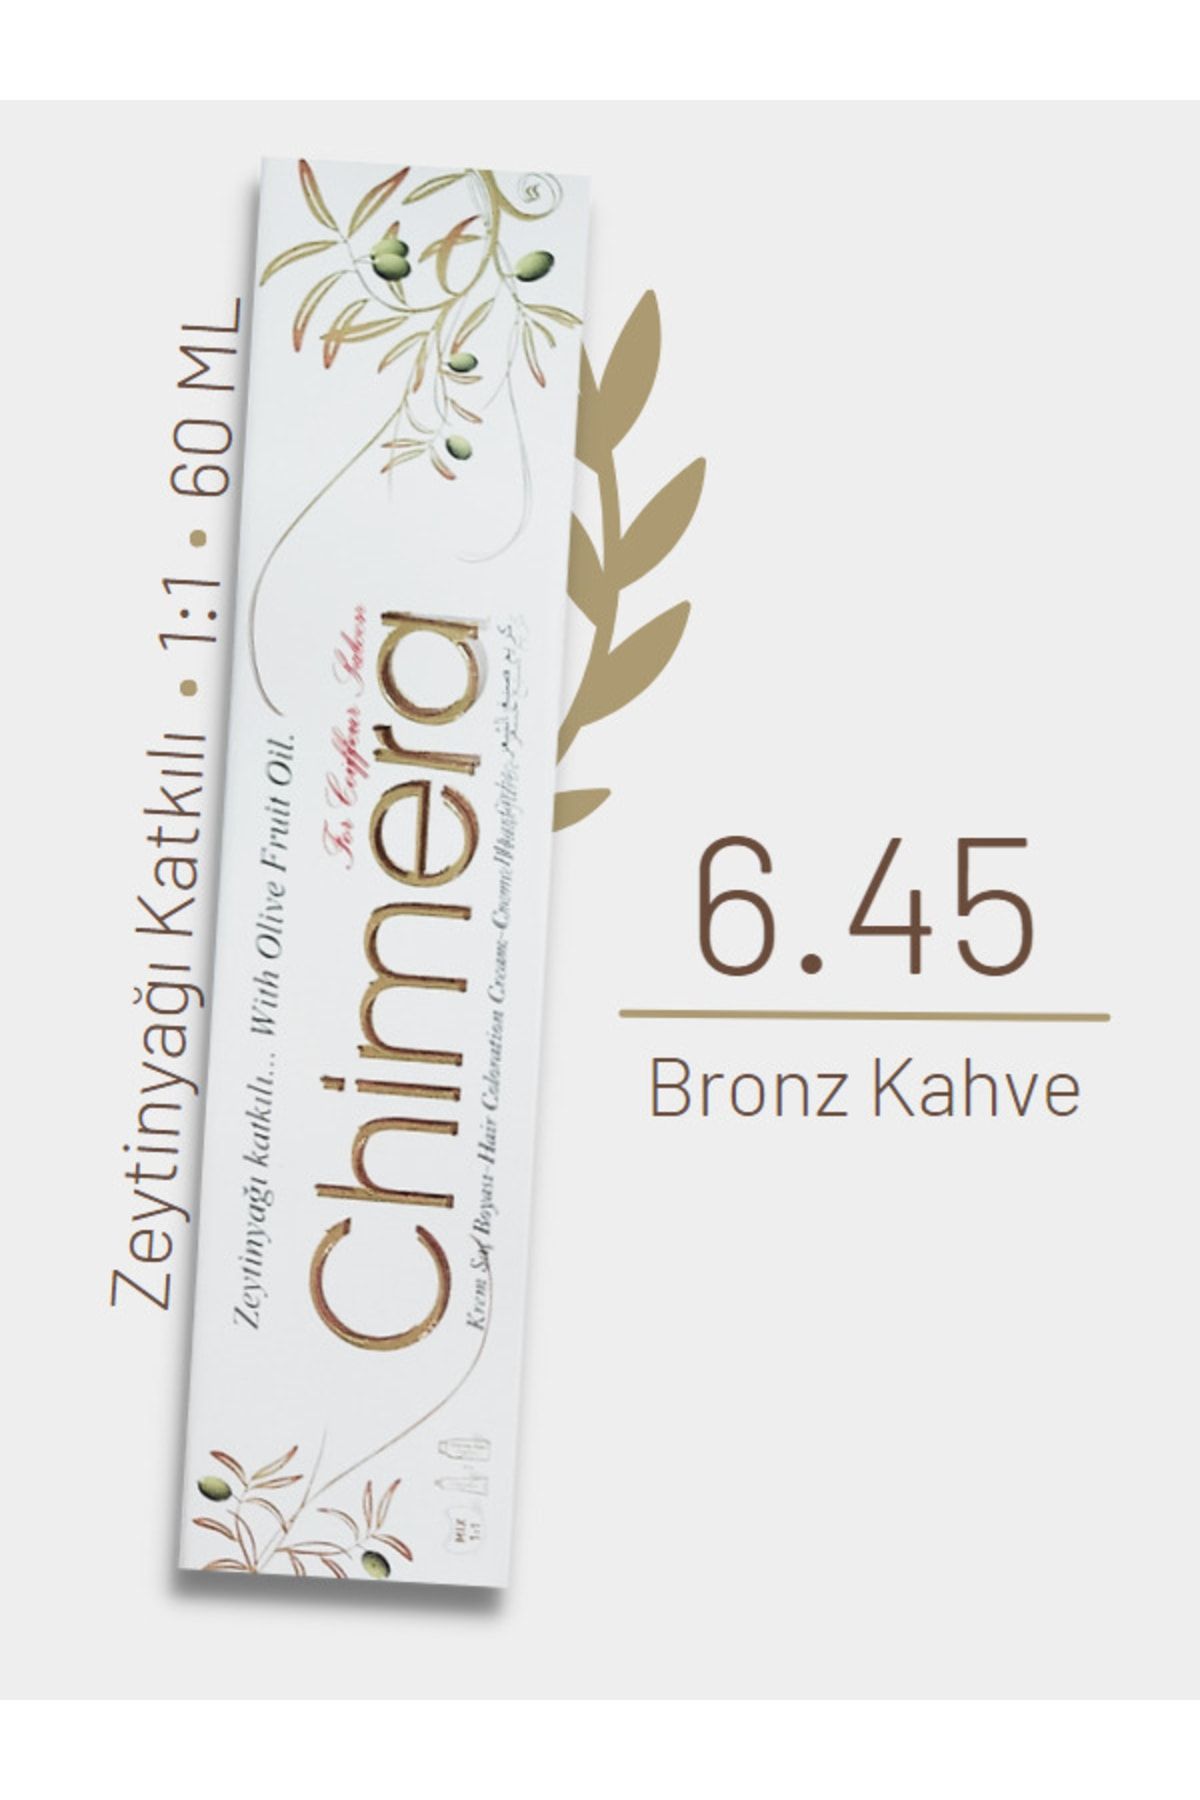 CHİMERA Yarı Bitkisel Saç Boyası No 6.45 - Bronz Kahve 60ml